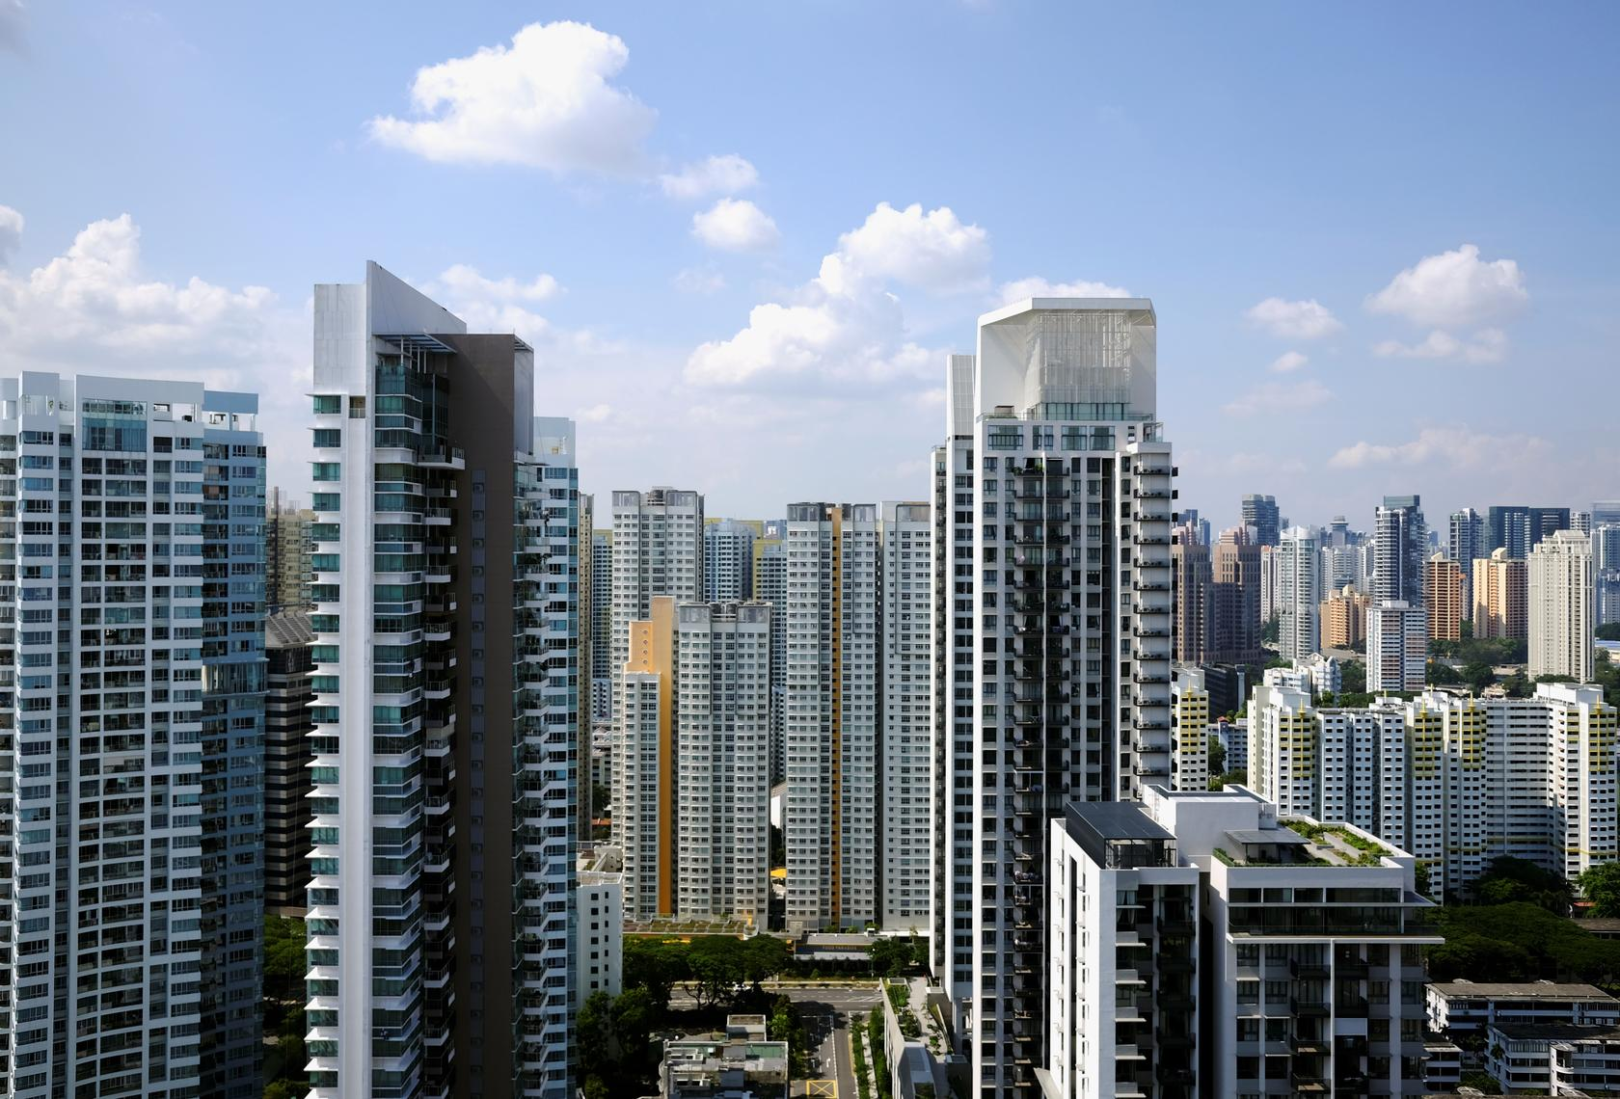 Singapurska polityka mieszkaniowa alternatywą dla prywatnego budownictwa?